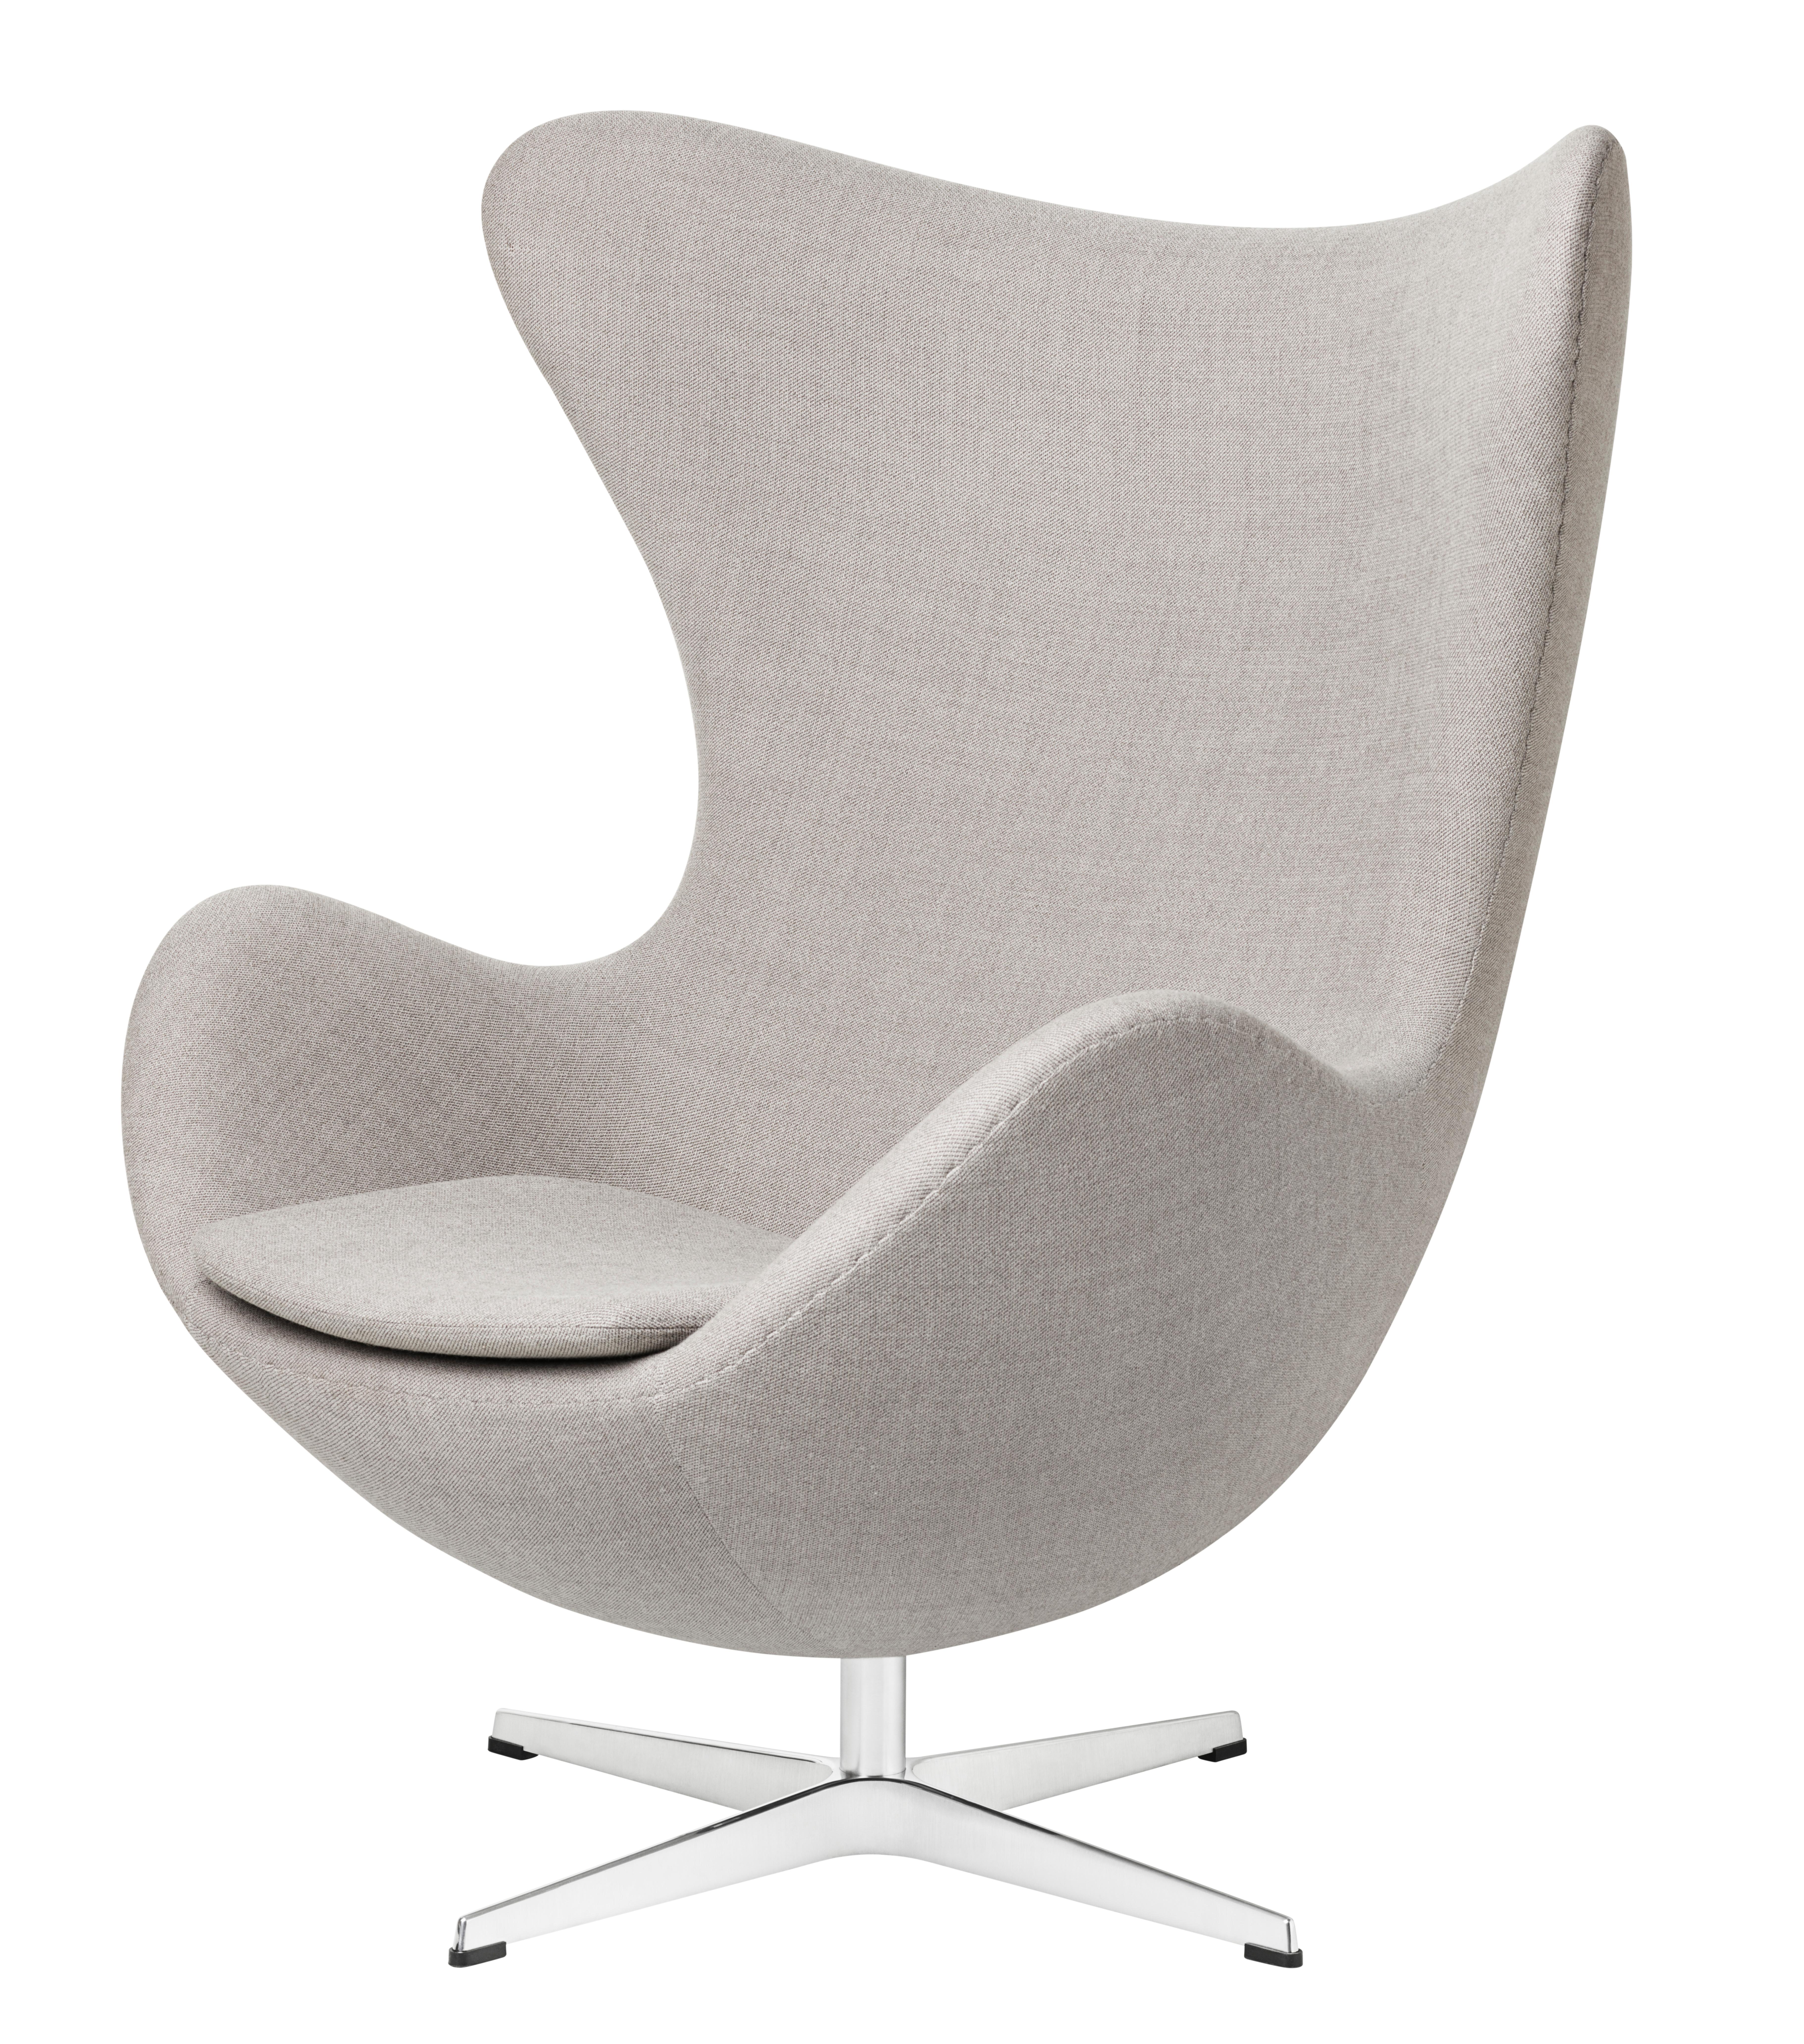 Arne Jacobsen 'Egg' Chair for Fritz Hansen in Fabric Upholstery (Cat. 1) For Sale 2